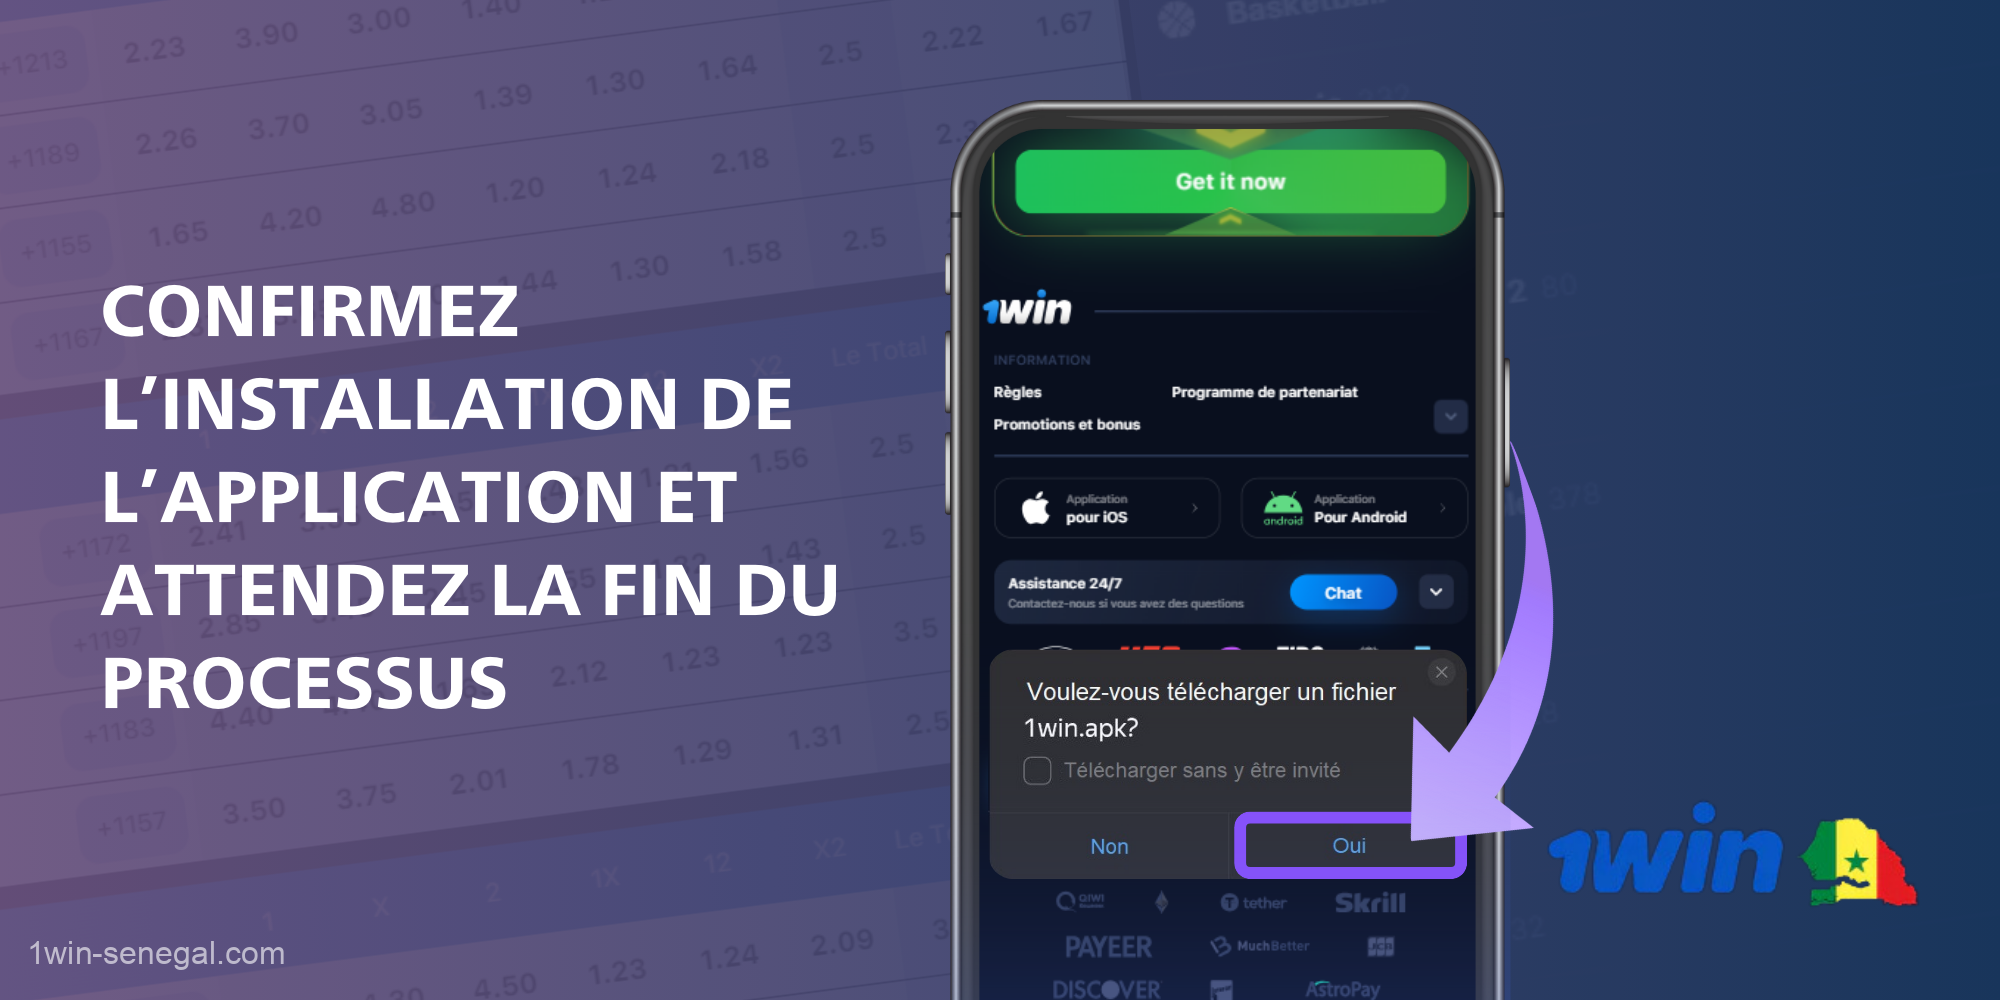 Pour installer 1Win sur un smartphone, un utilisateur sénégalais doit confirmer l'installation de l'application et attendre la fin du processus